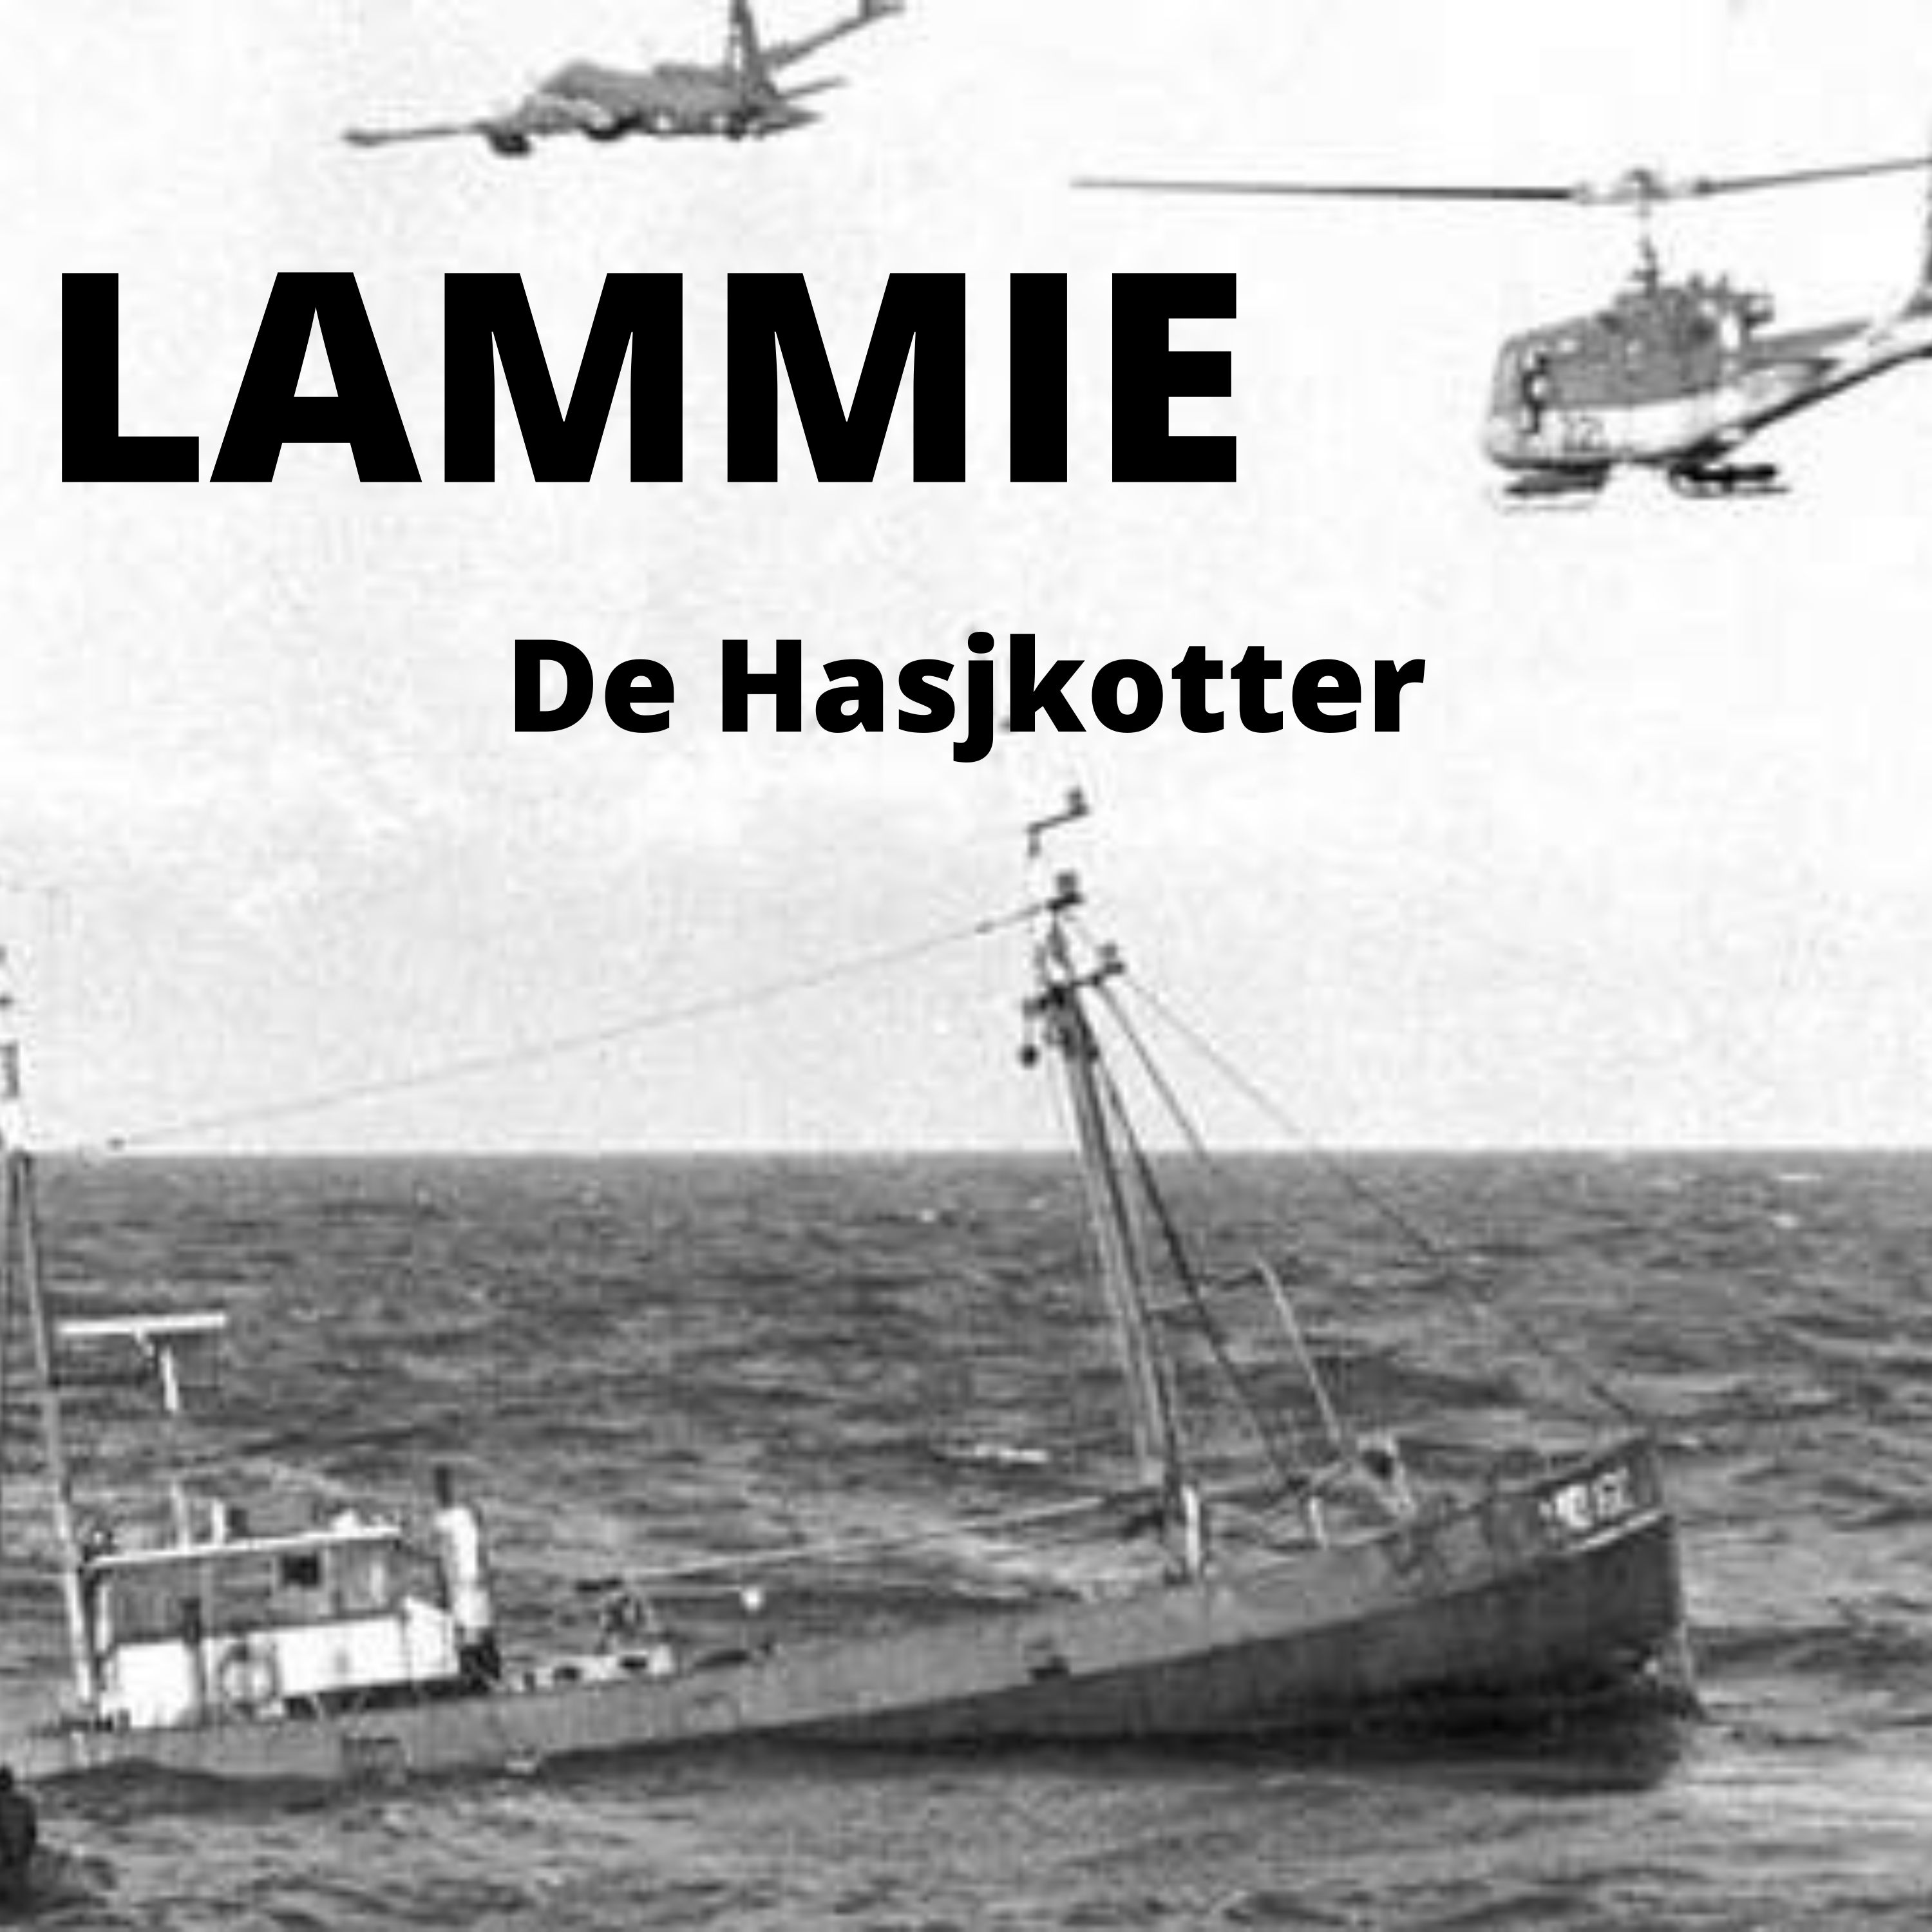 Show artwork for LAMMIE, De Hasjkotter